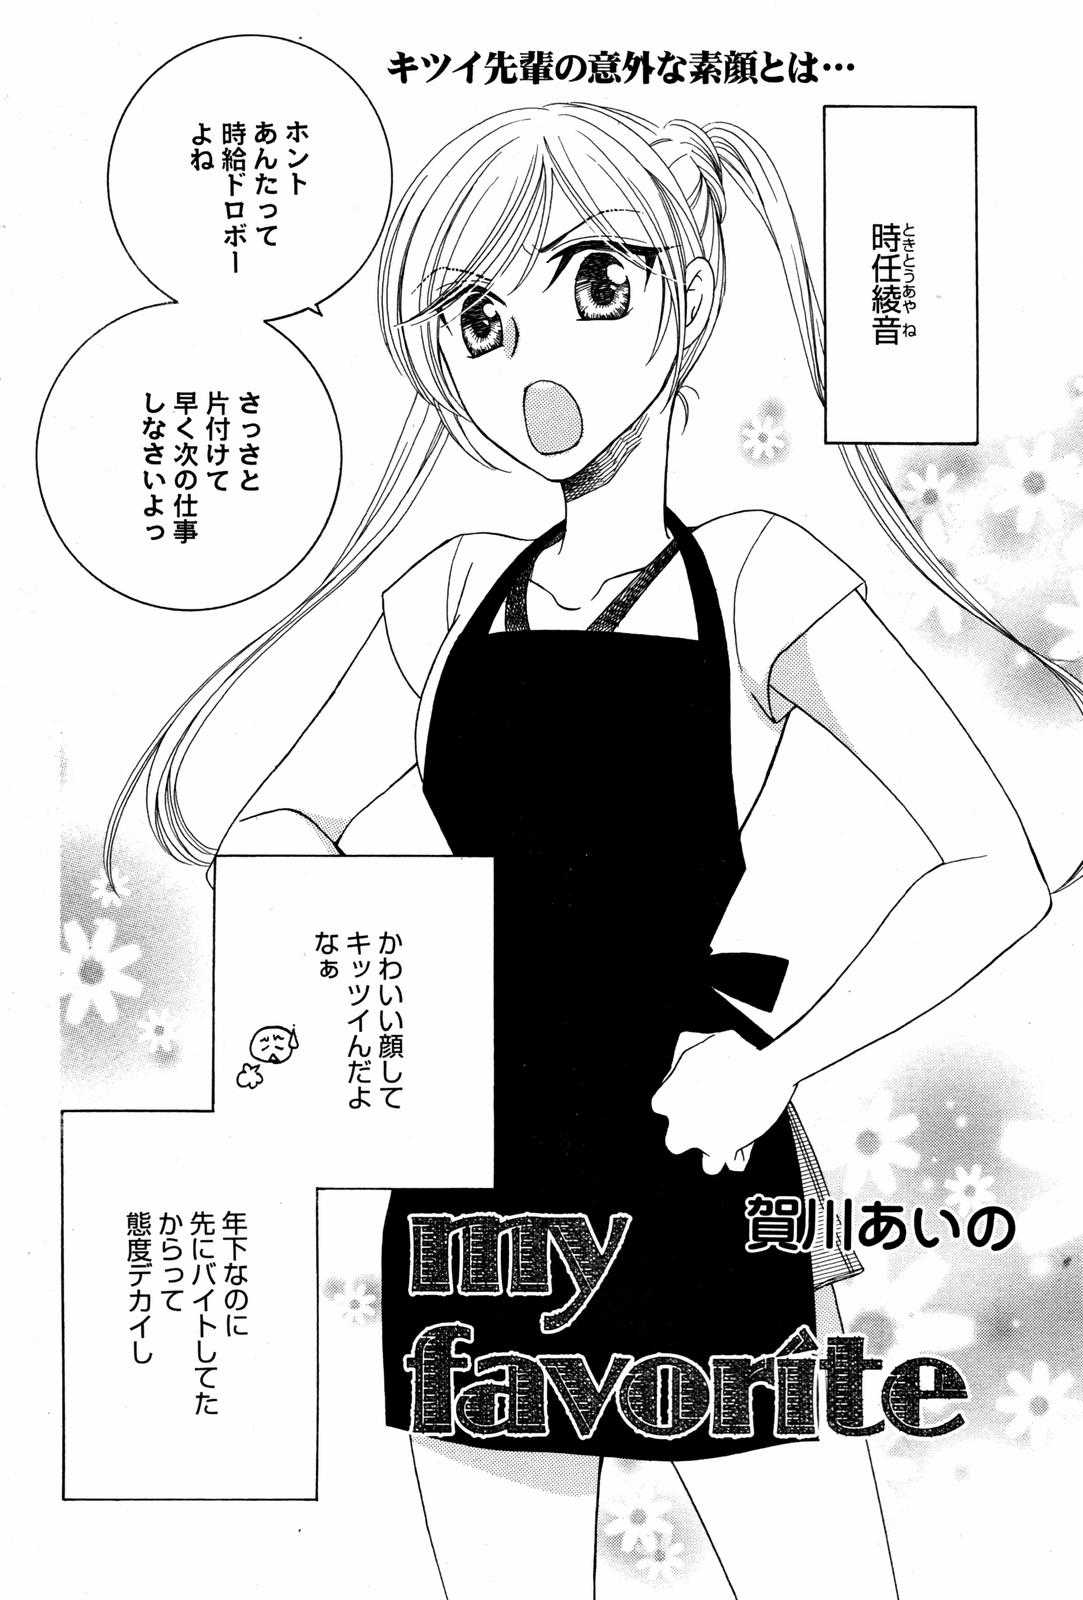 Manga Bangaichi [2007-08] 漫画ばんがいち 2007年8月号